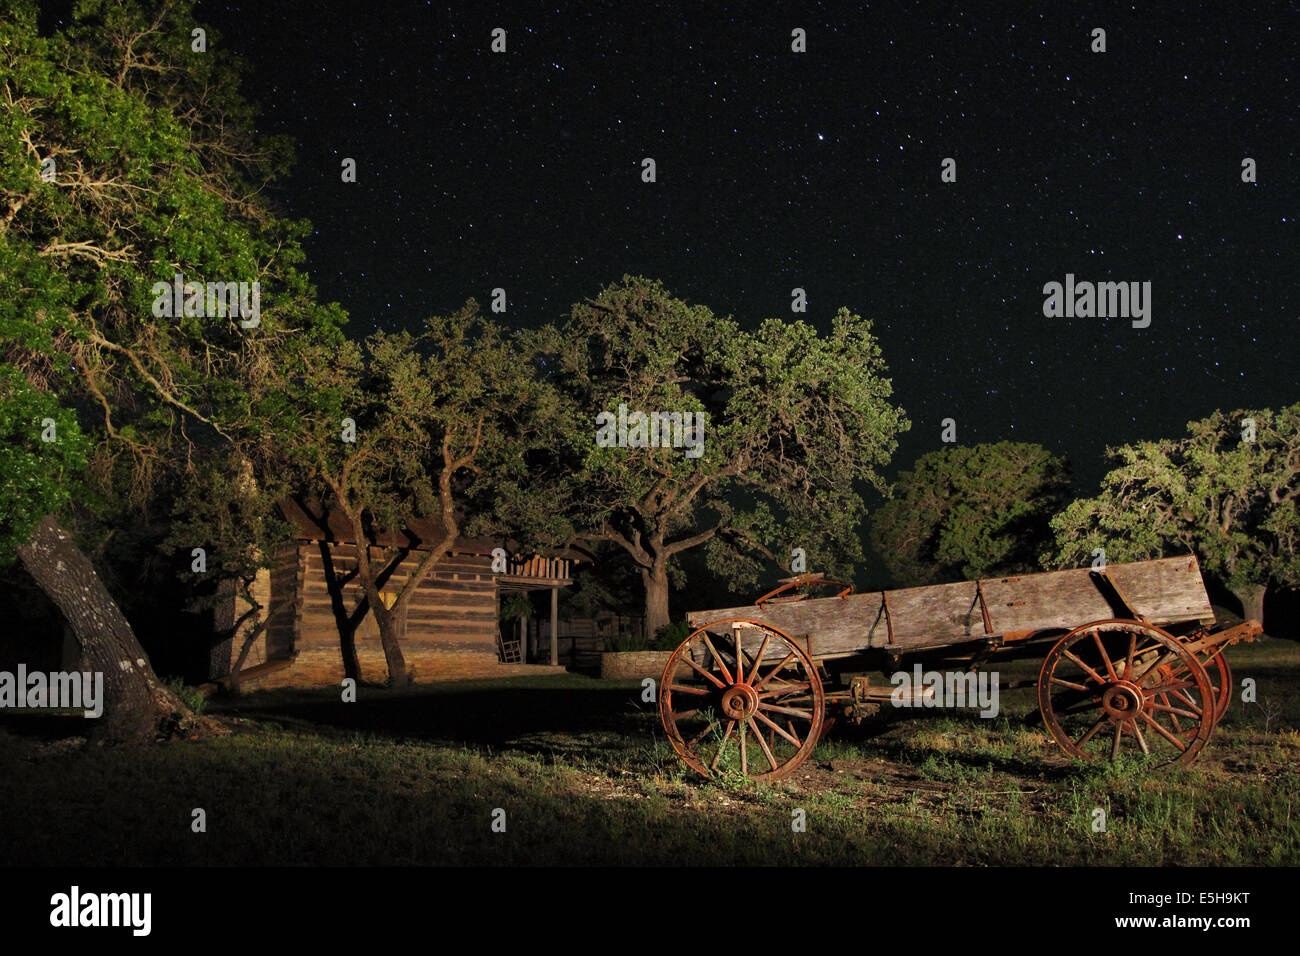 Un vecchio carro di legno con ruote arrugginito appoggiata sotto le stelle di notte in un campo di fattoria in Texas, Stati Uniti d'America. Foto Stock